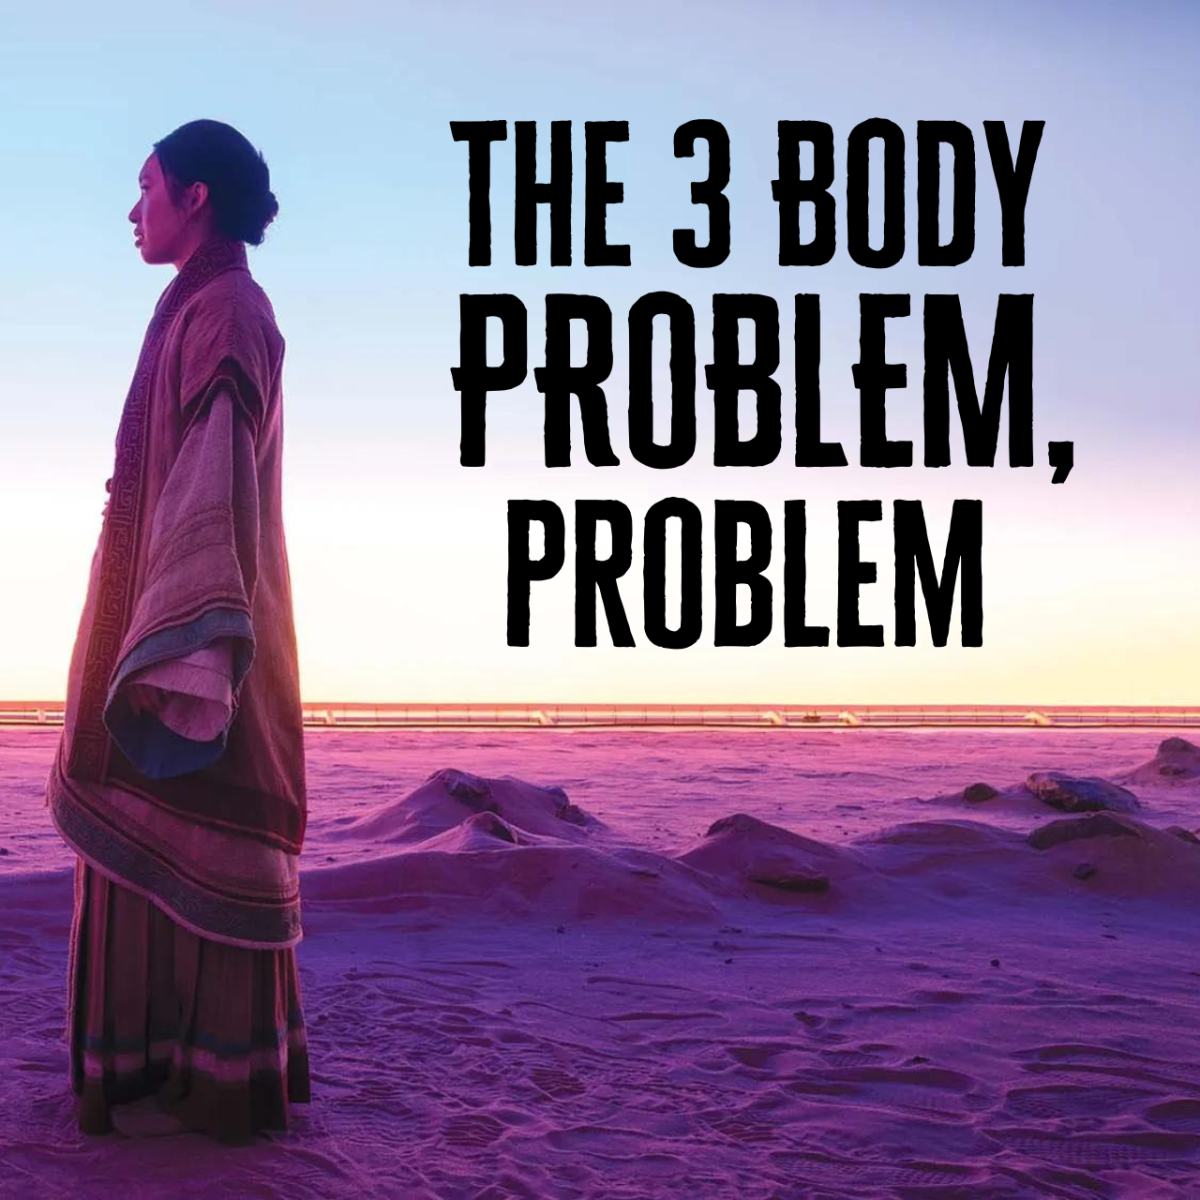 The 3 Body Problem, Problem